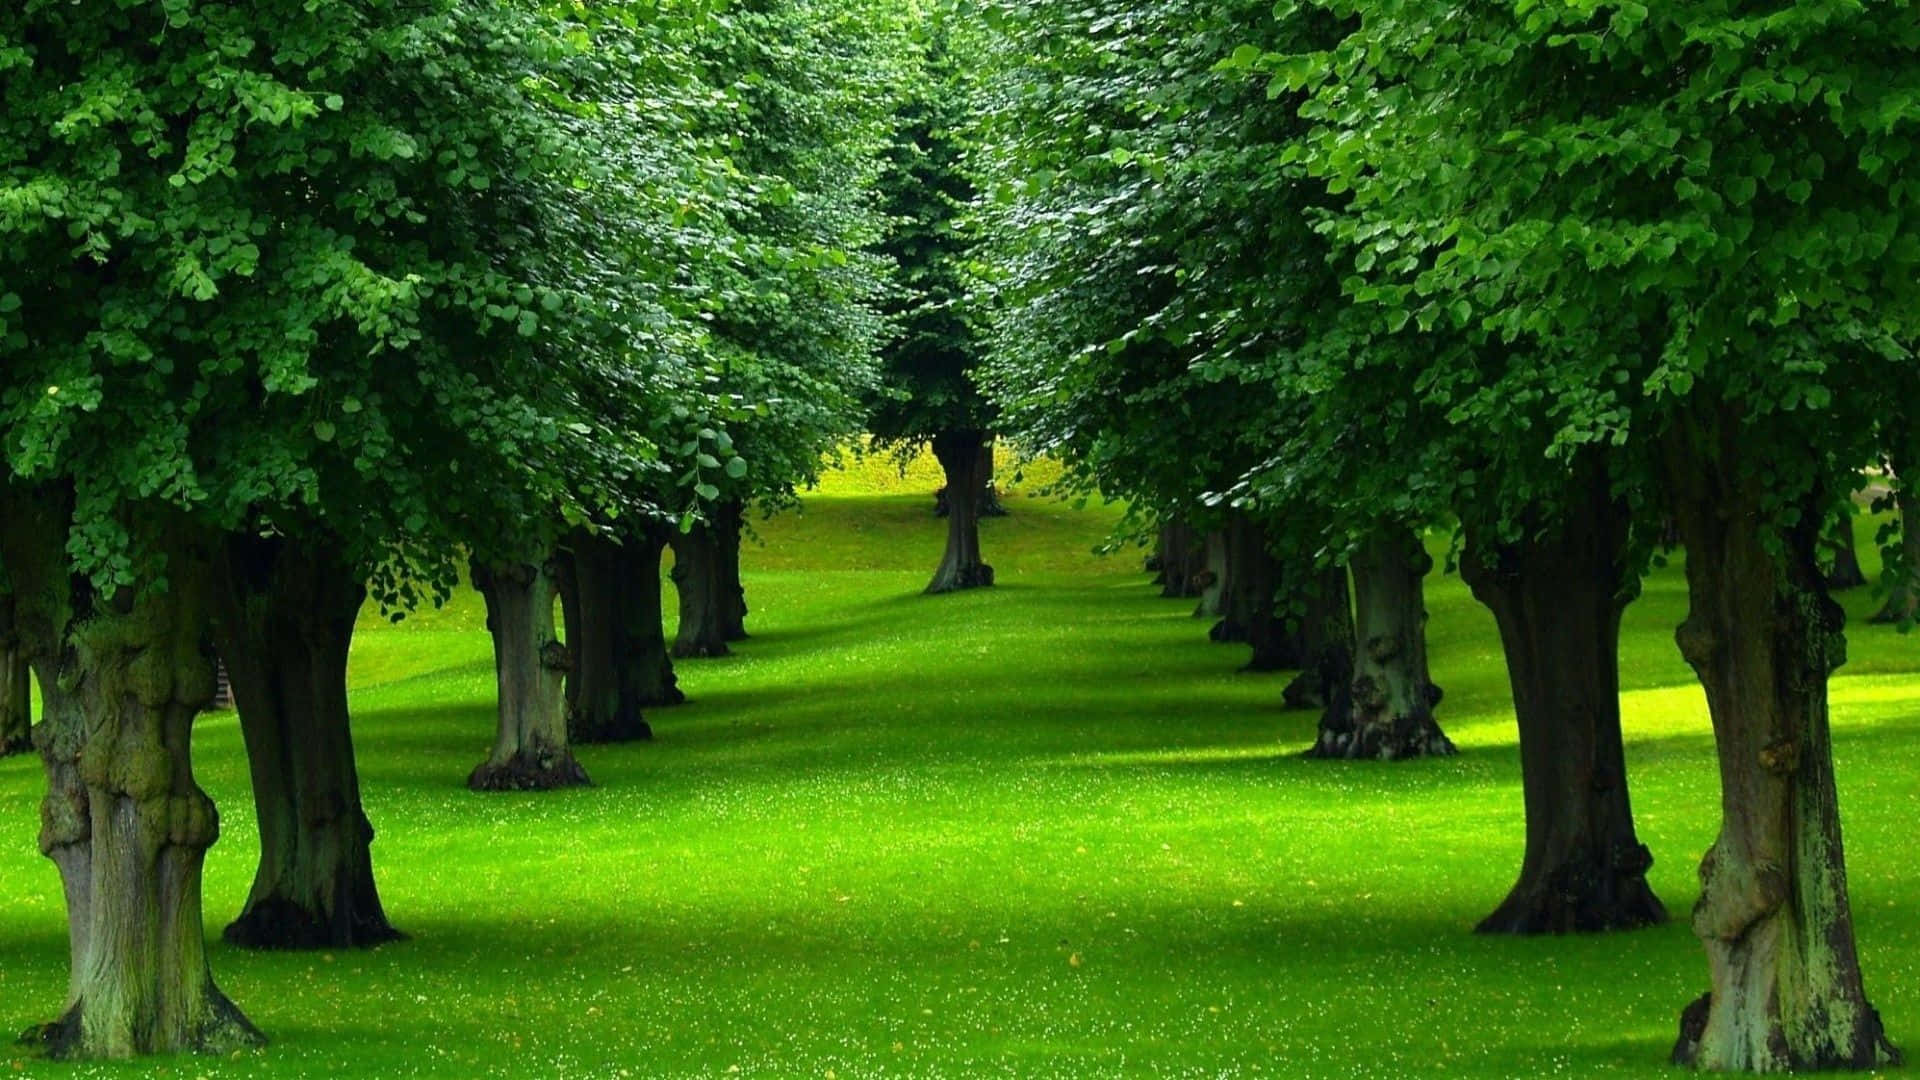 Unhermoso Árbol Que Se Yergue Alto En Un Entorno Naturalmente Iluminado Al Aire Libre.